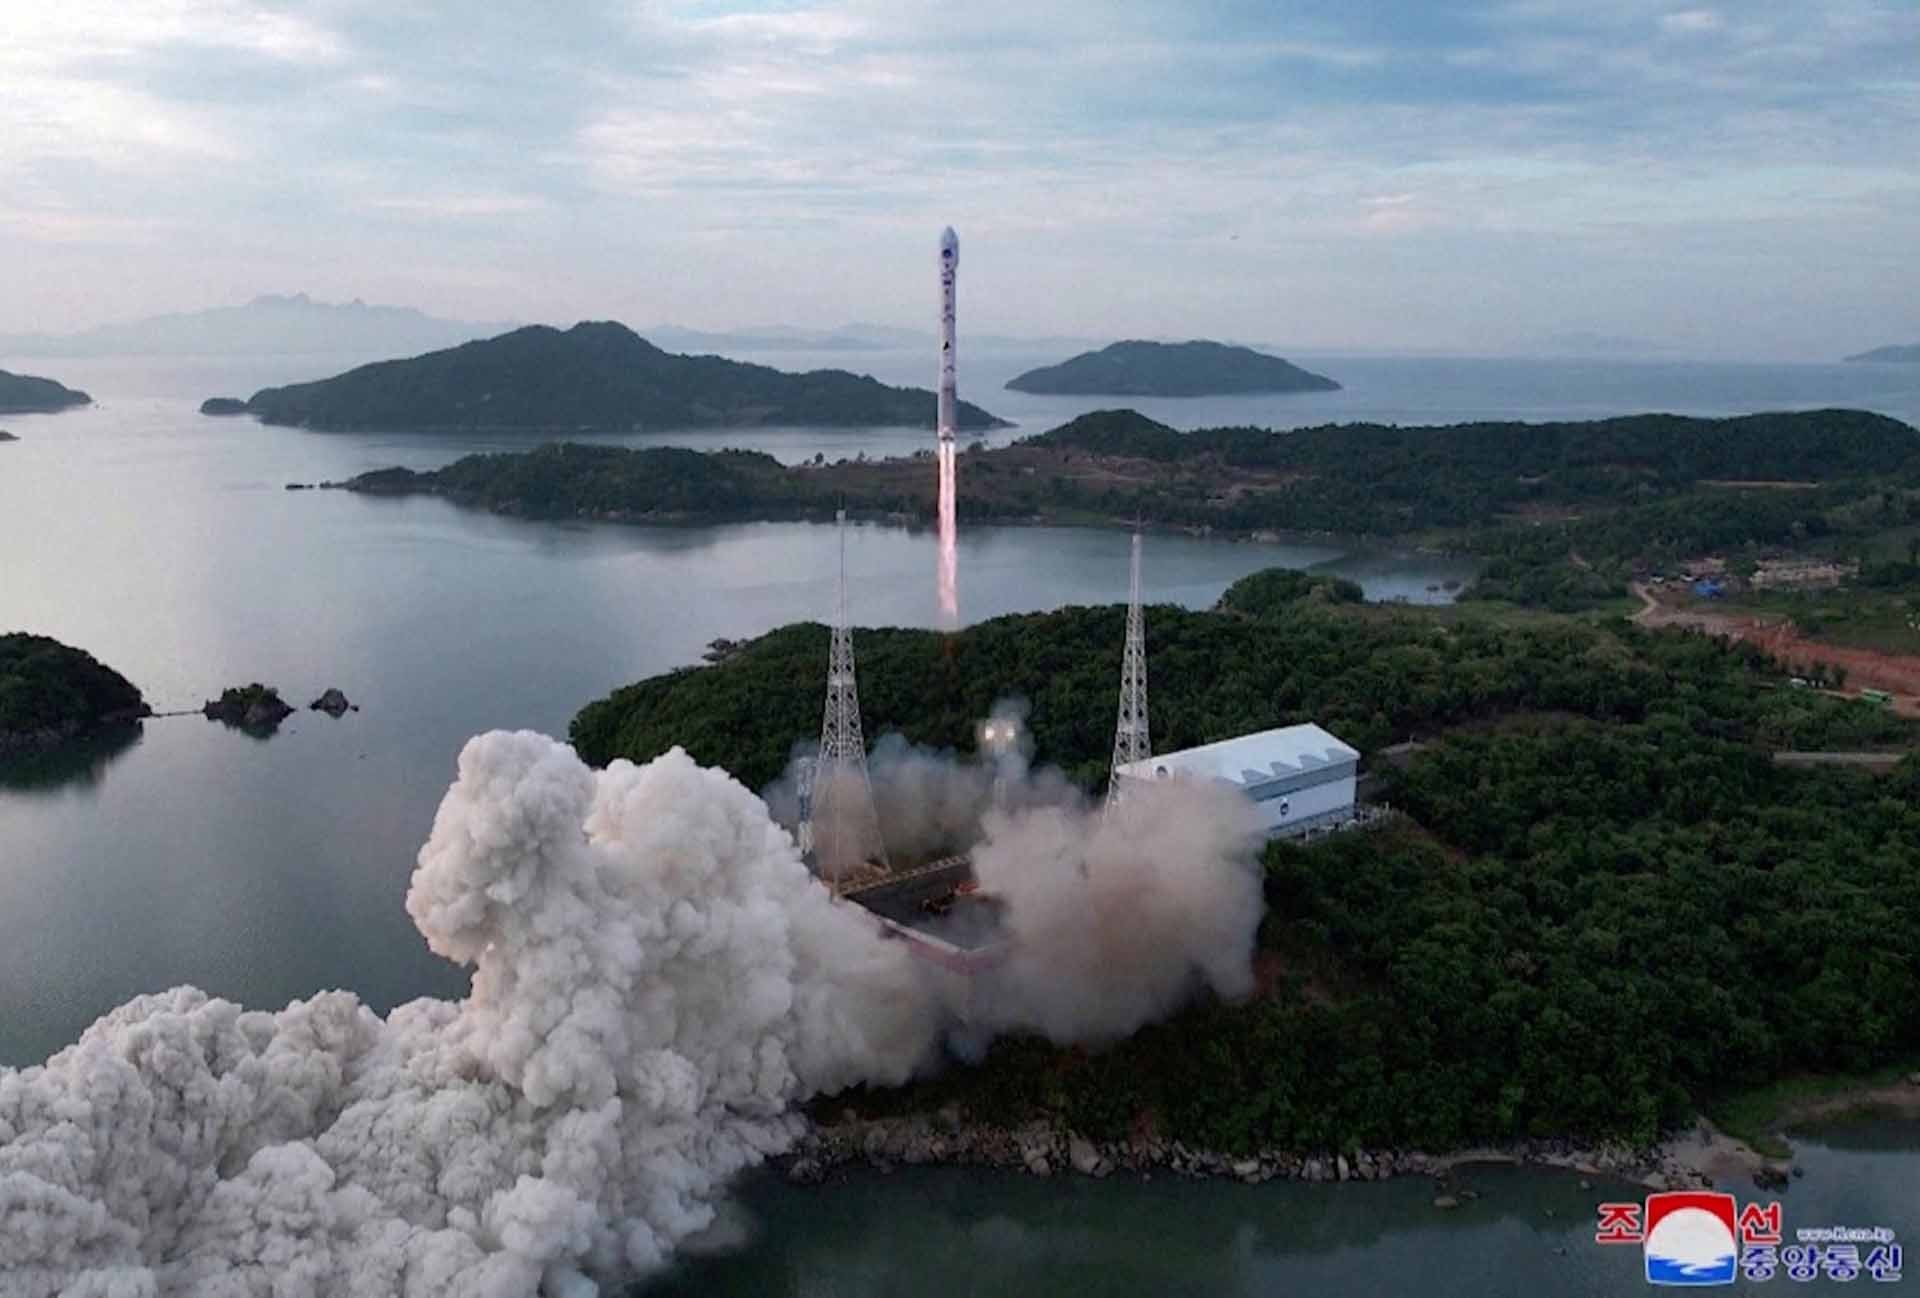 Việc Bình Nhưỡng phóng vệ tinh do thám quân sự và việc bỏ CMA từ hai phía đã dẫn đến vòng xoáy căng thẳng mới ở bán đảo Triều Tiên. (Nguồn: KCNA)